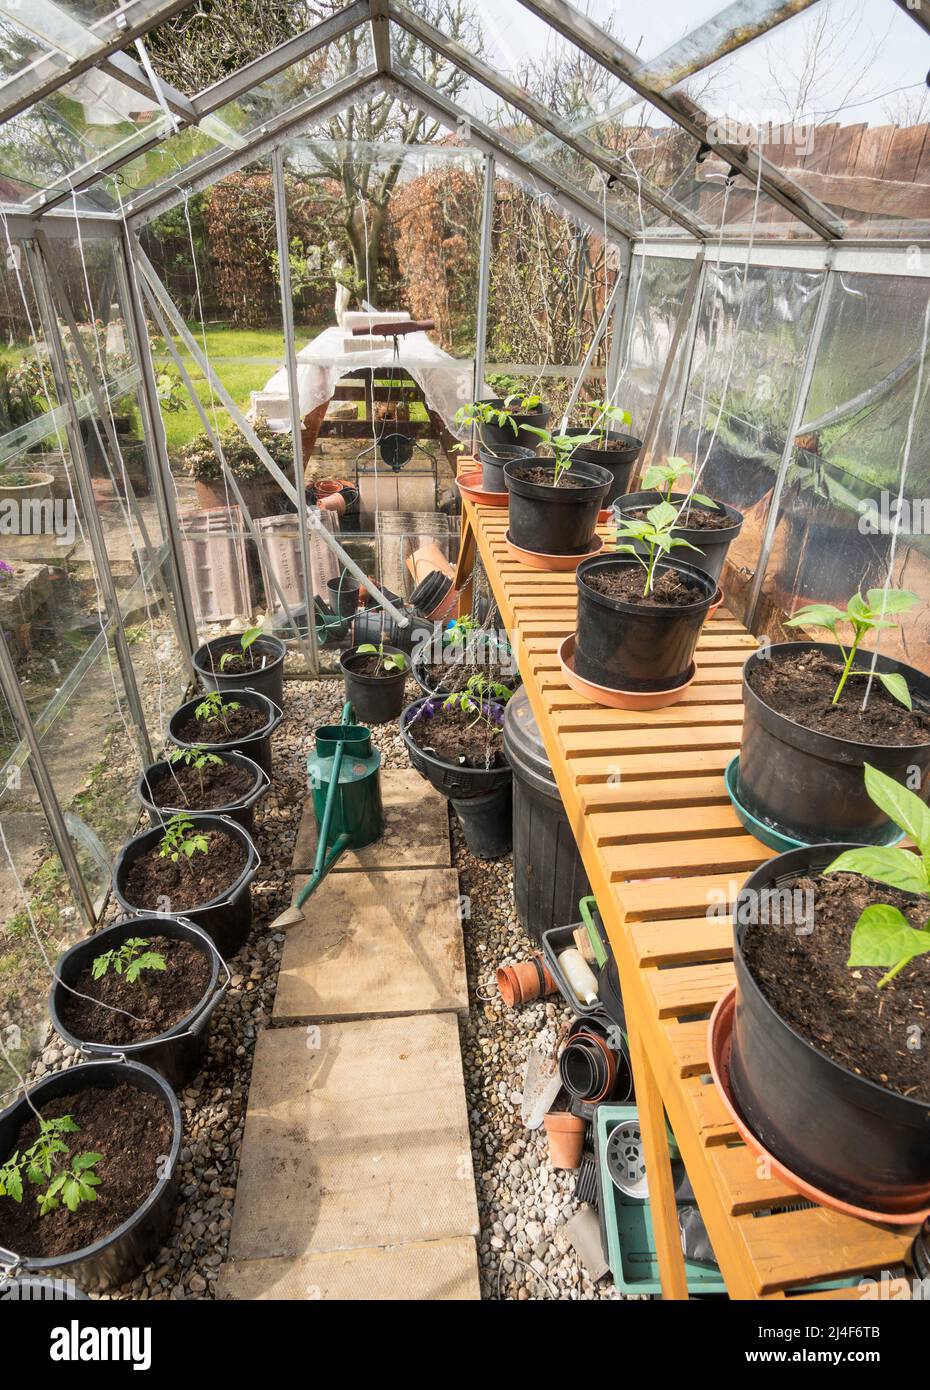 Plantas jóvenes de tomate y pimienta dulce que crecen dentro del invernadero de un jardinero aficionado, Inglaterra, Reino Unido Foto de stock